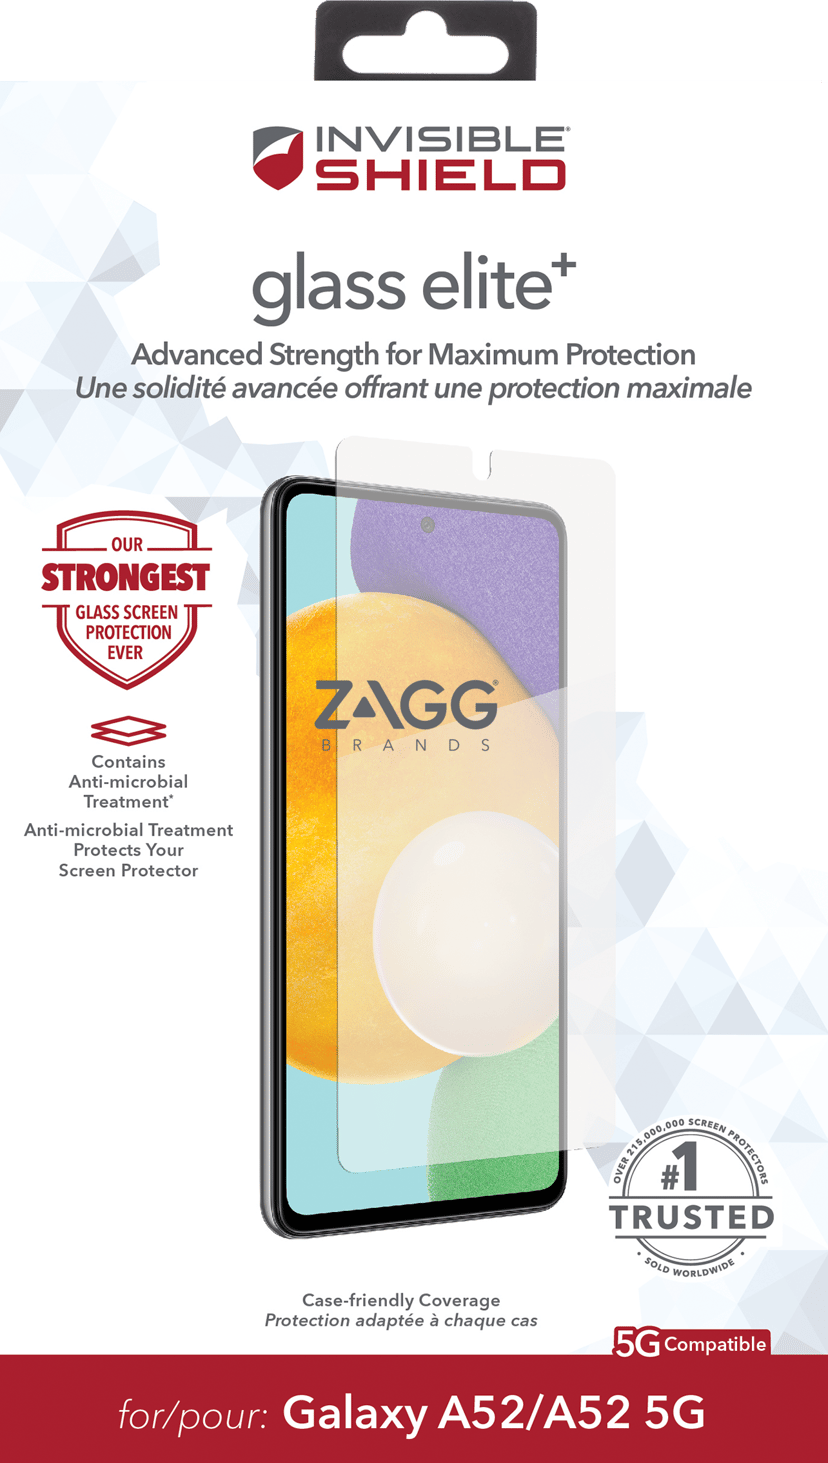 Zagg InvisibleShield Glass Elite+ Samsnug Galaxy A52, Samsnug Galaxy A52 5G